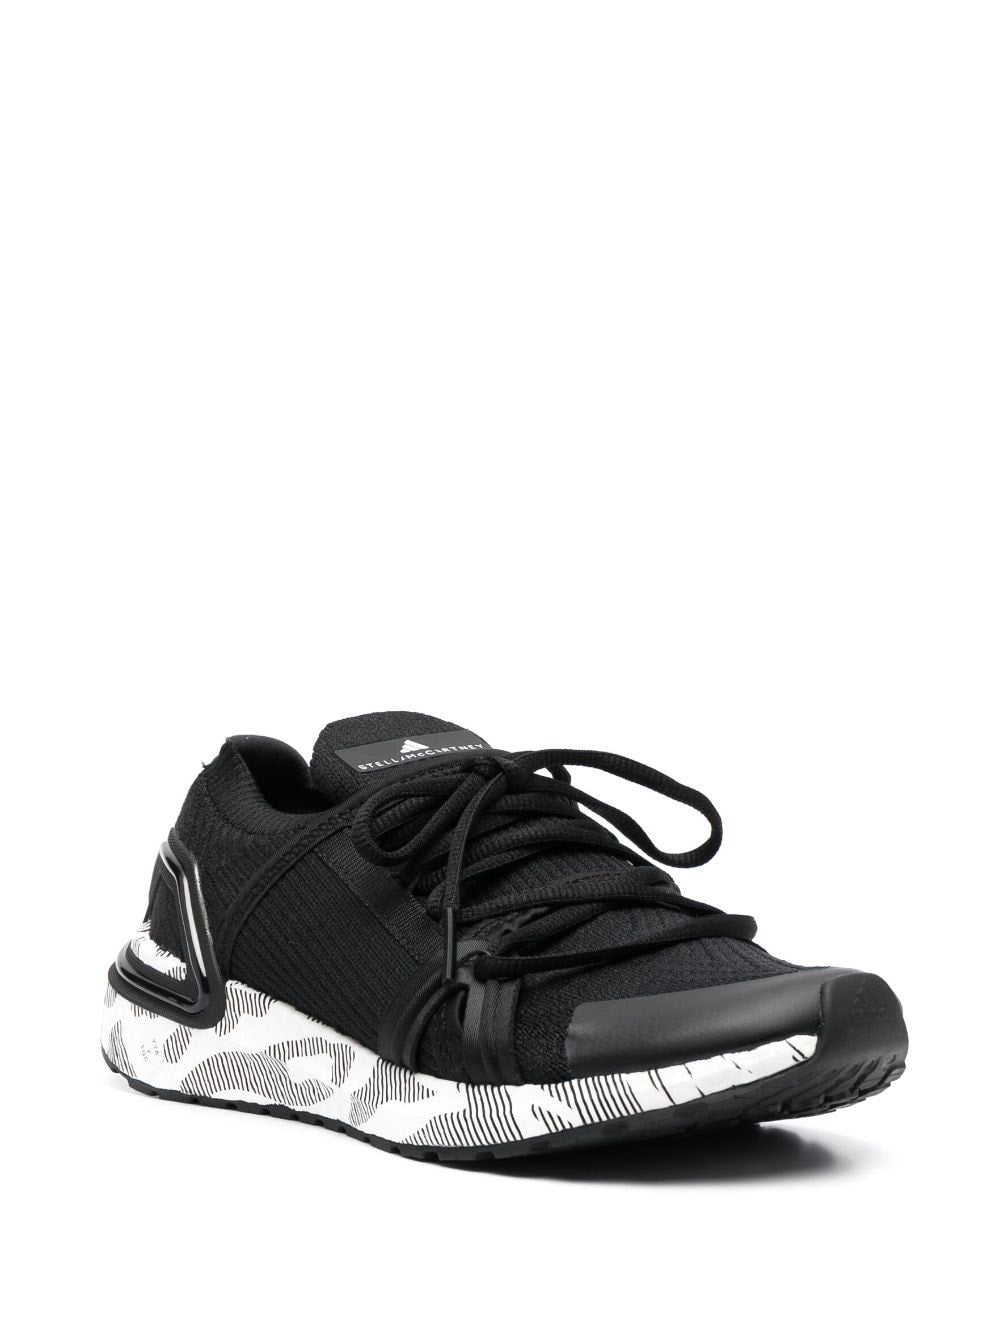 Adidas By Stella Mccartney Sneakers Black